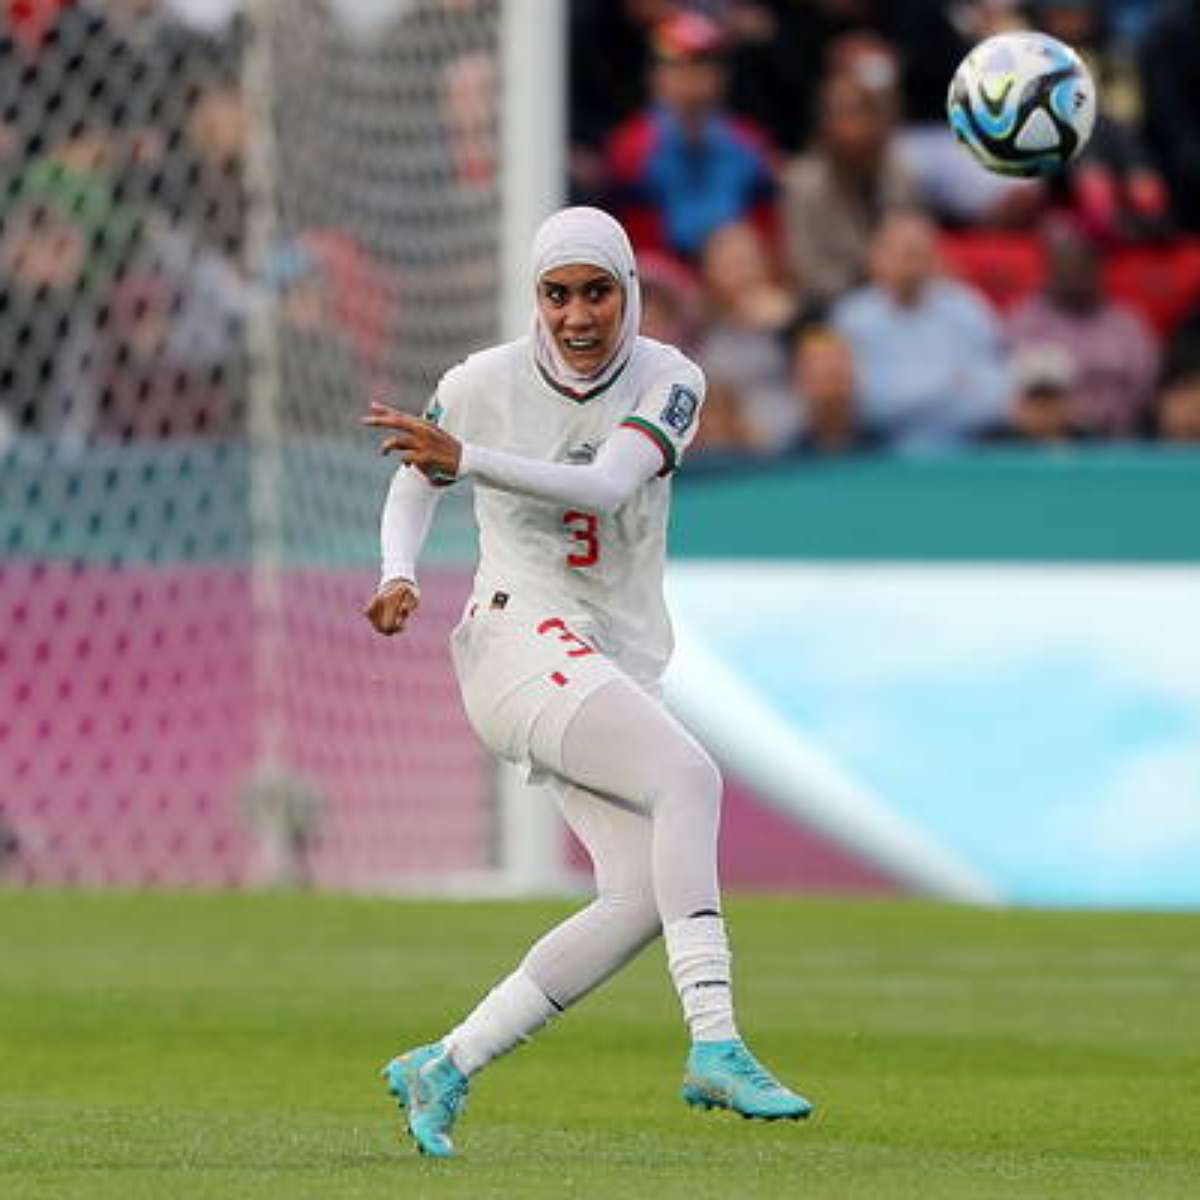 Jogadora rouba bola da mão da goleira, e juíza valida gol absurdo em  clássico feminino na Turquia, Esportes